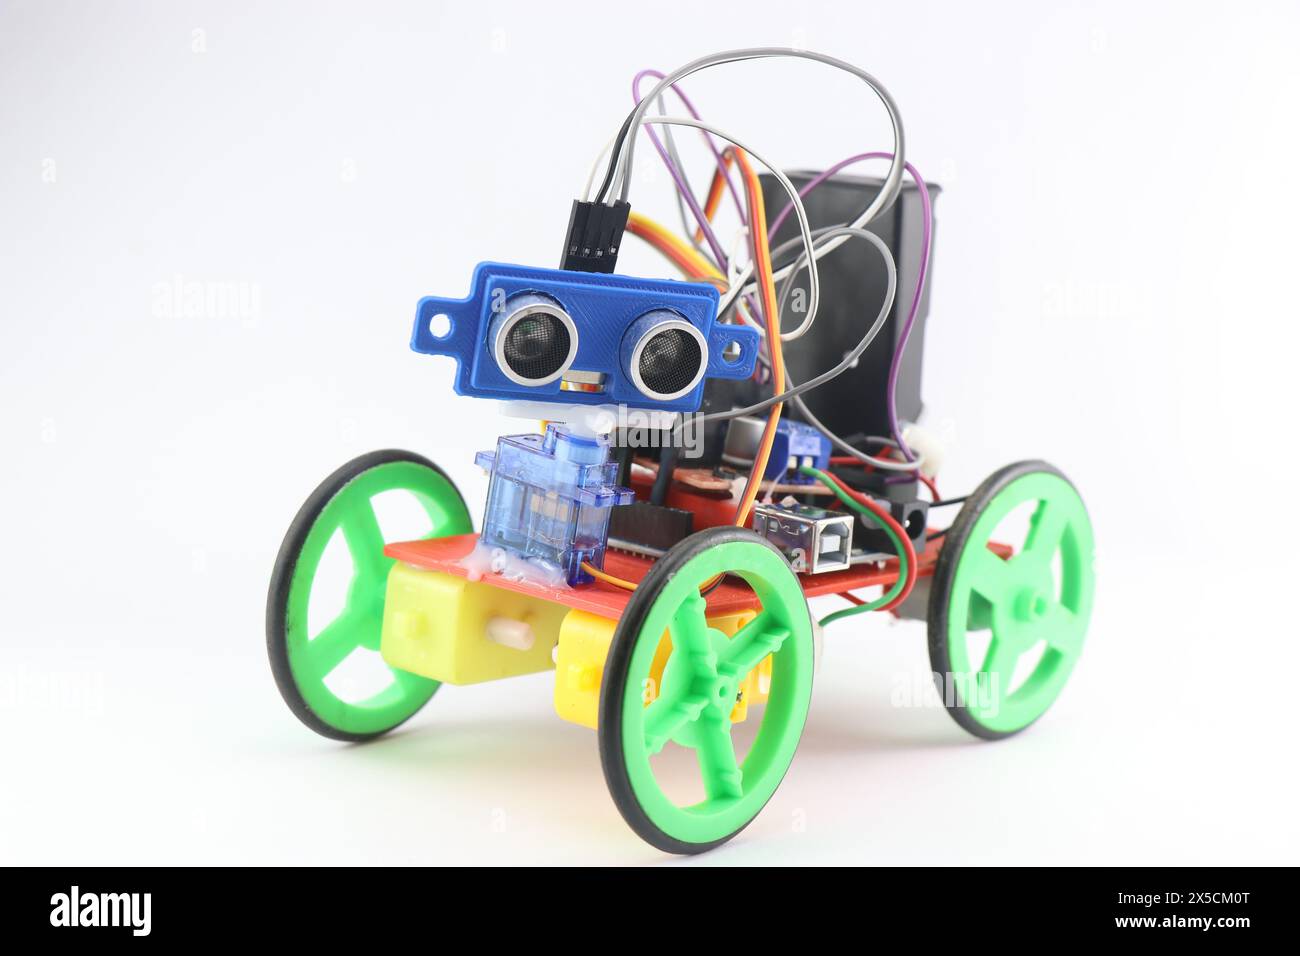 Auto robotizzata realizzata con parti stampate in 3D ed è programmabile e dotata di sensore a ultrasuoni per il rilevamento di ostacoli e altri componenti elettronici Foto Stock